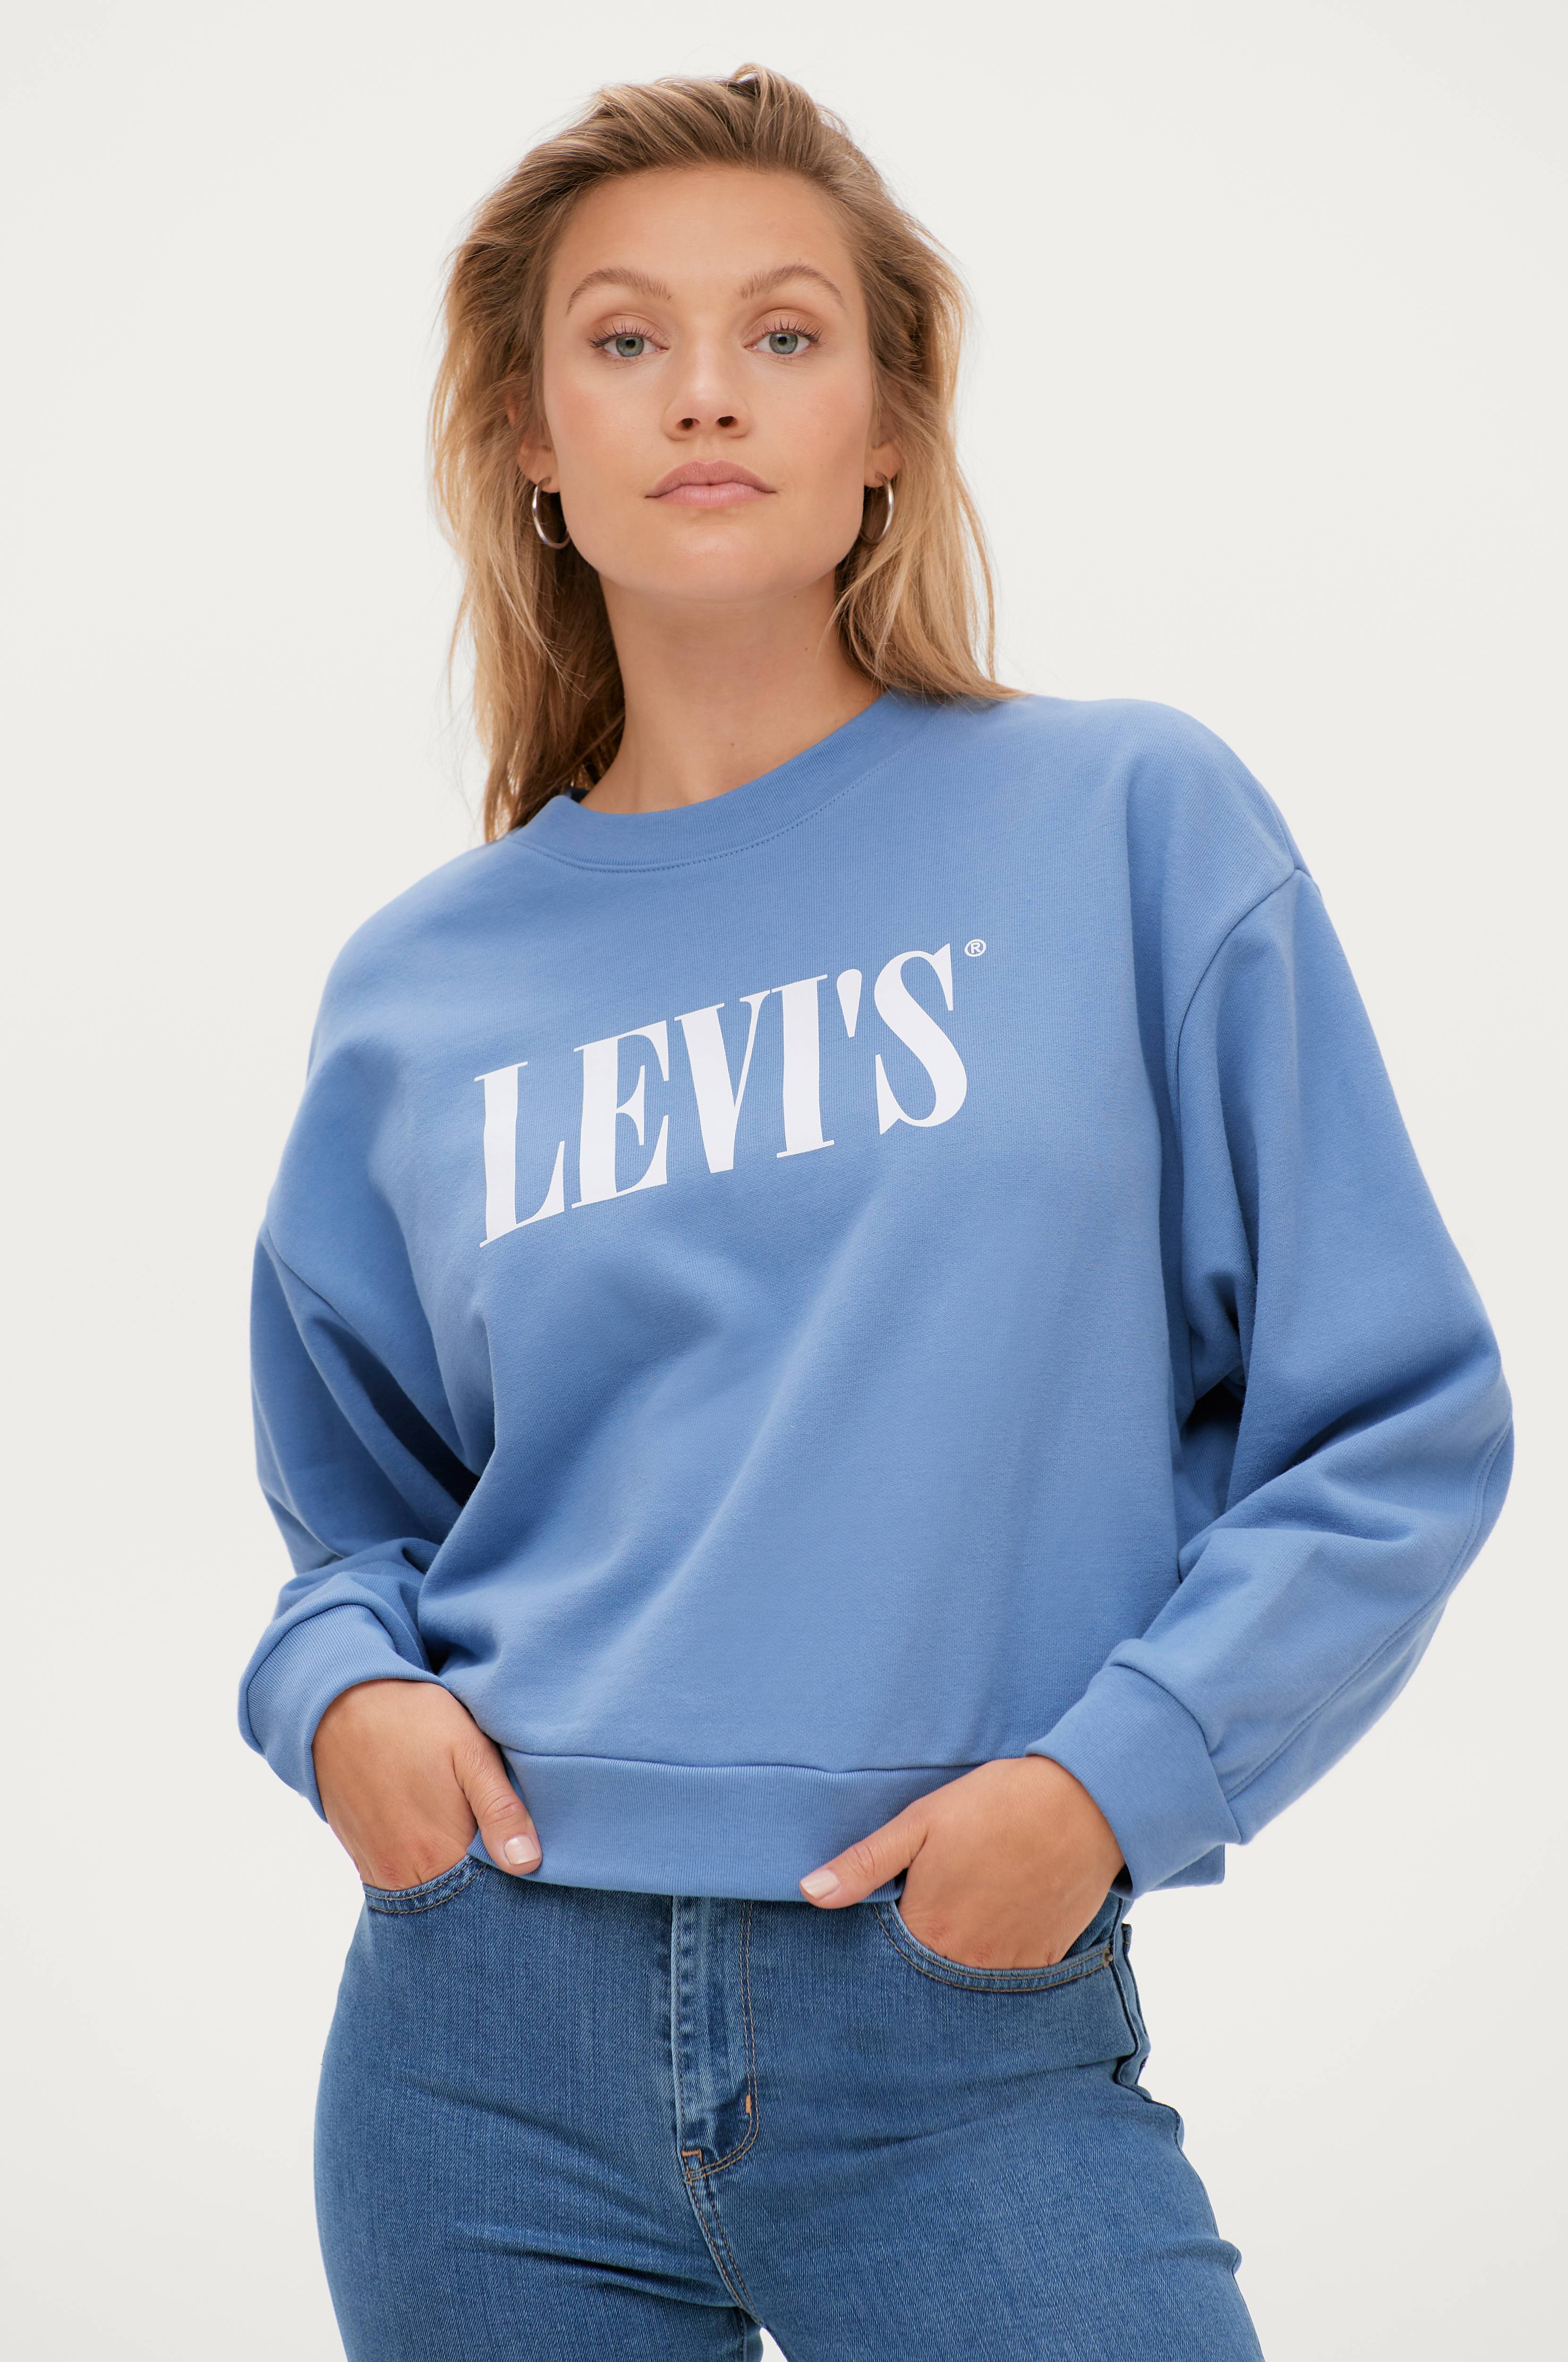 Trænge ind Maiden værtinde Levi's Sweatshirt Graphic Diana Crew Crew T2 90S - Blå - Sweatshirts |  Ellos.dk